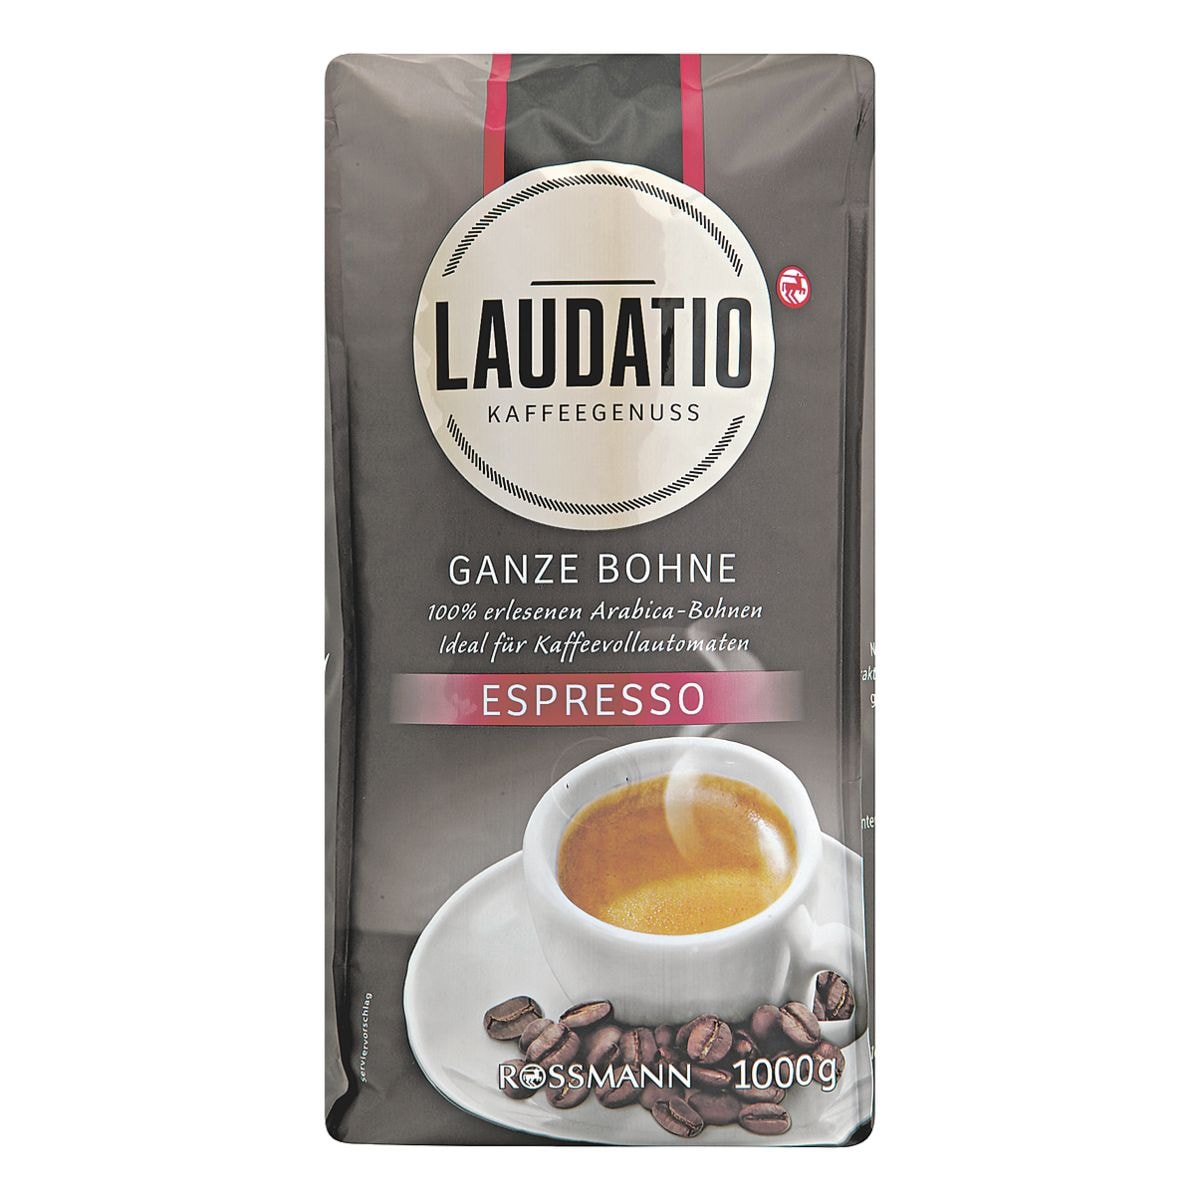 Laudatio Ganze Bohne Espresso Kaffebohnen 1000 g